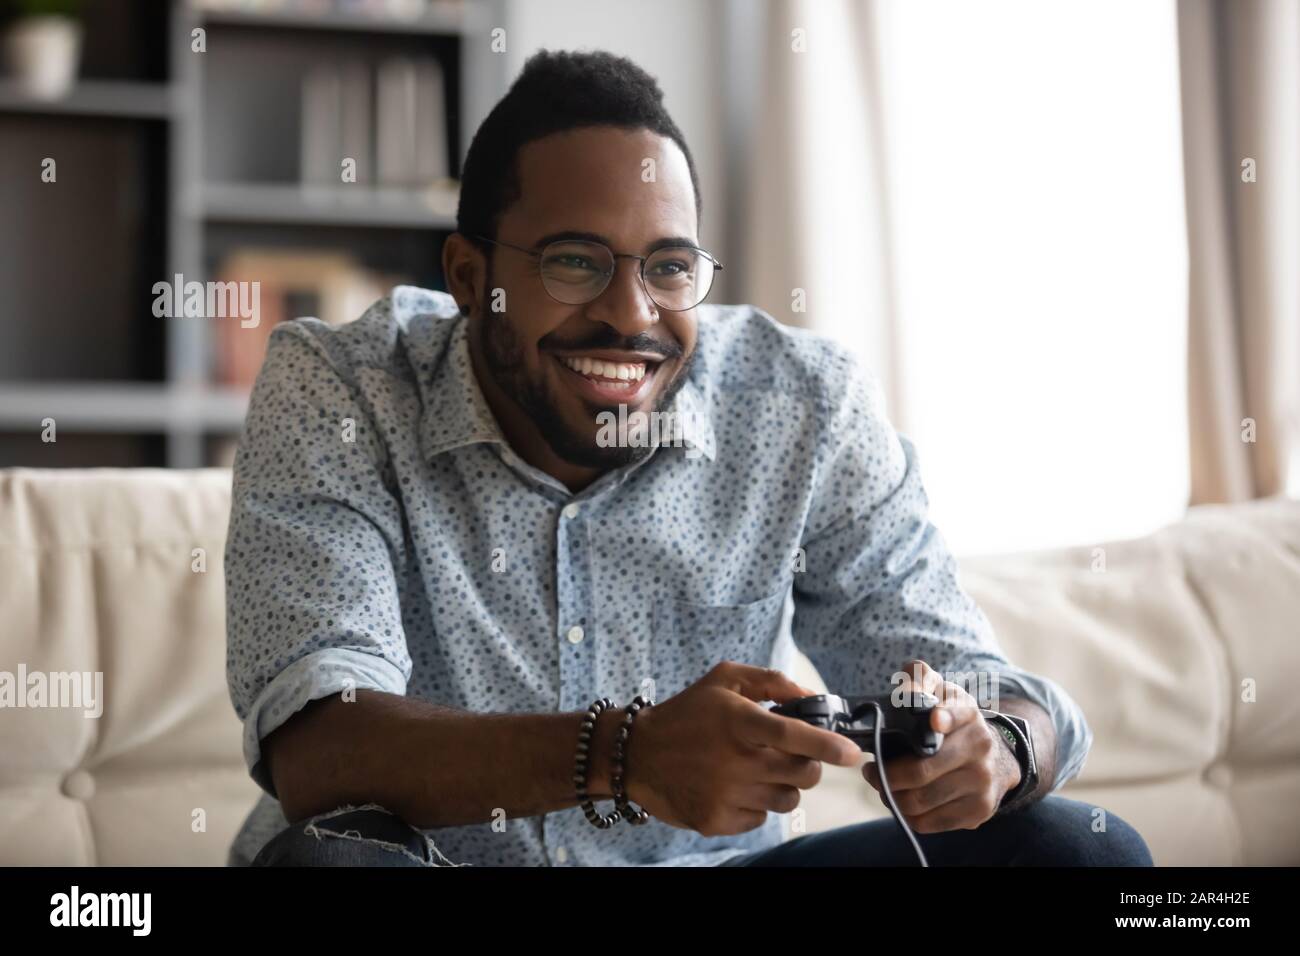 Fröhlicher junger afrikanischer Kerl, der Joystick-Controller hält, der Videospiel spielt Stockfoto